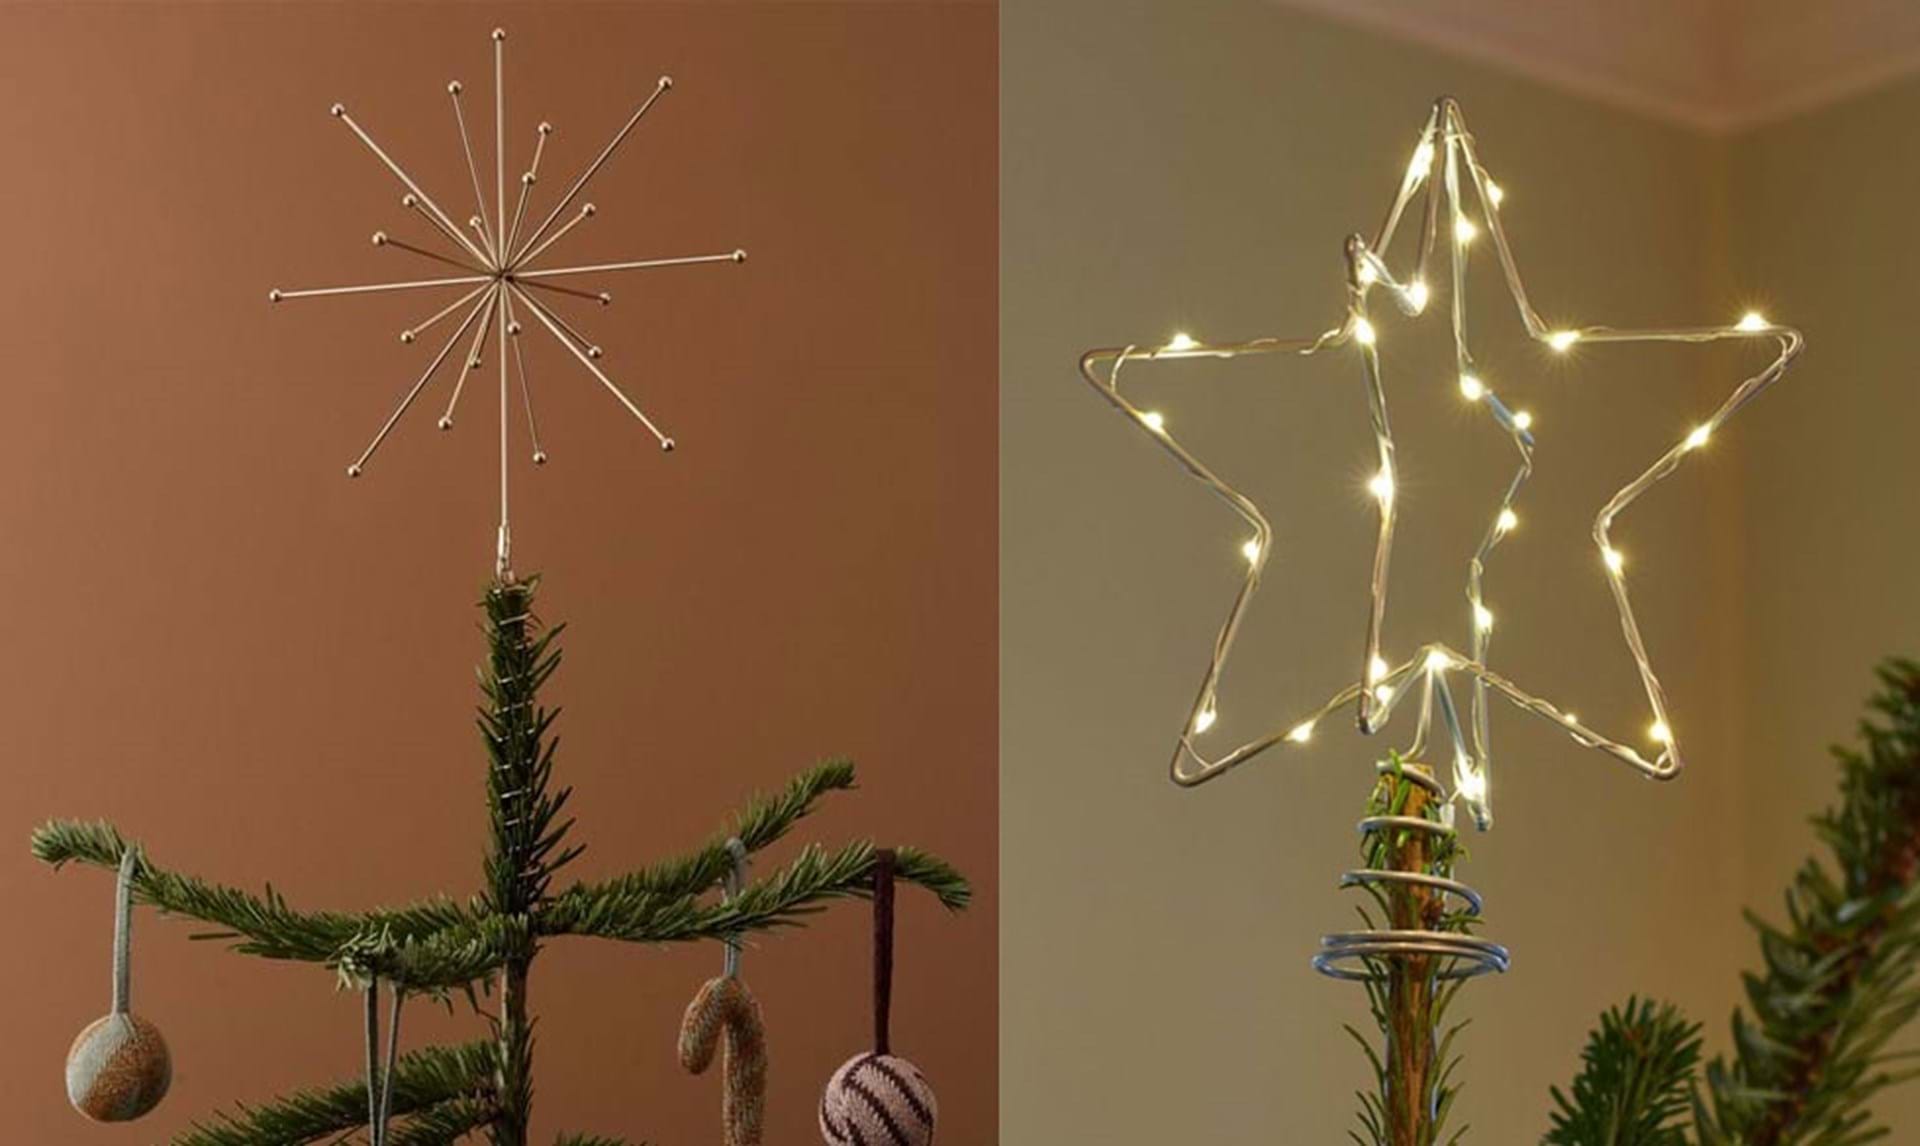 Installation hat Måltid 19 smukke juletræsstjerner til dit juletræ - se dem her - ALT.dk